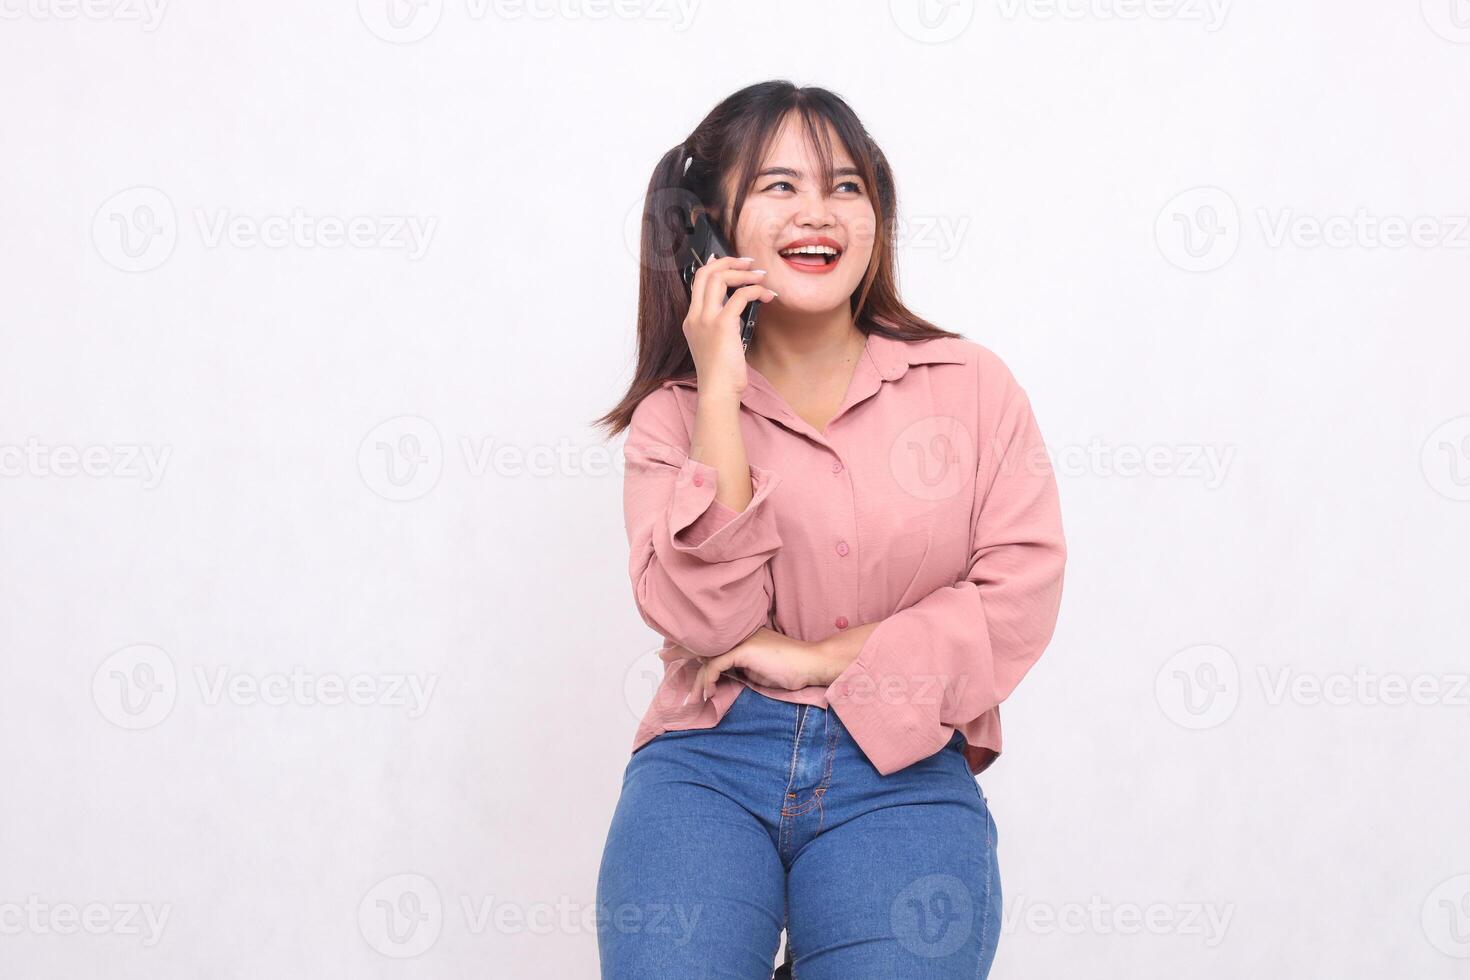 mooi gelukkig Aziatisch vrouw in haar Jaren 20 vervelend gewoontjes overhemd met armen gekruiste gebruik makend van cel telefoon telefoon houding terwijl lachend op zoek links Aan wit achtergrond studio portret voor banier advertentie, banier foto